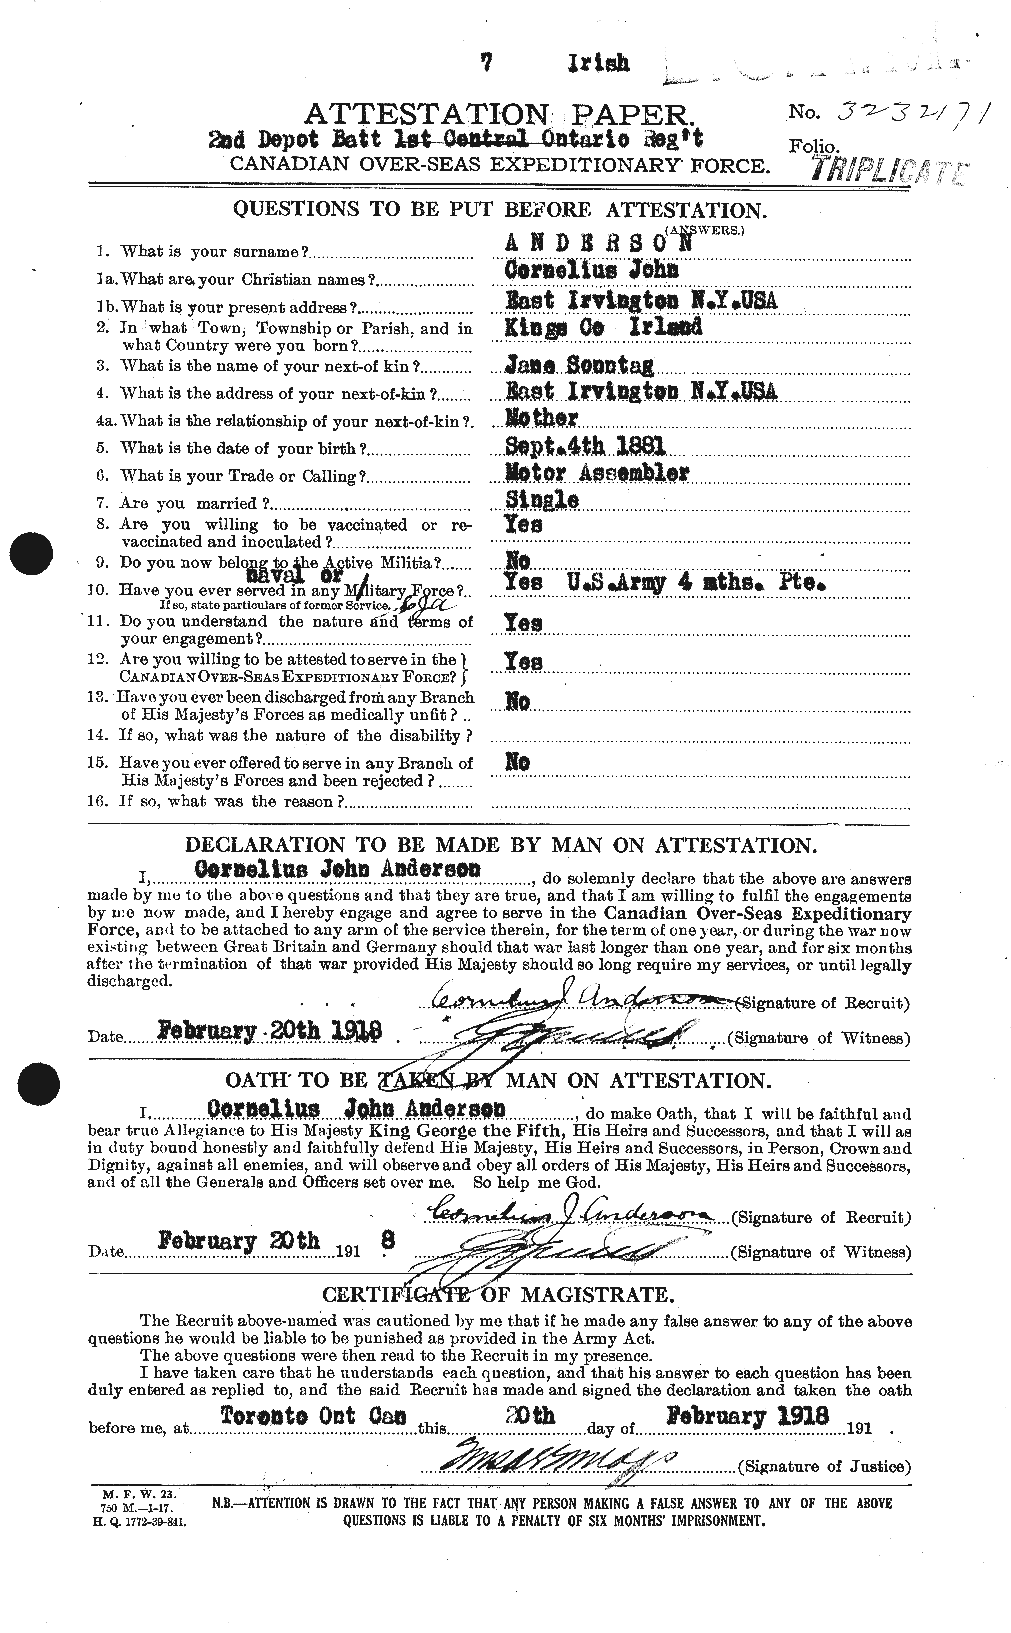 Dossiers du Personnel de la Première Guerre mondiale - CEC 210052a